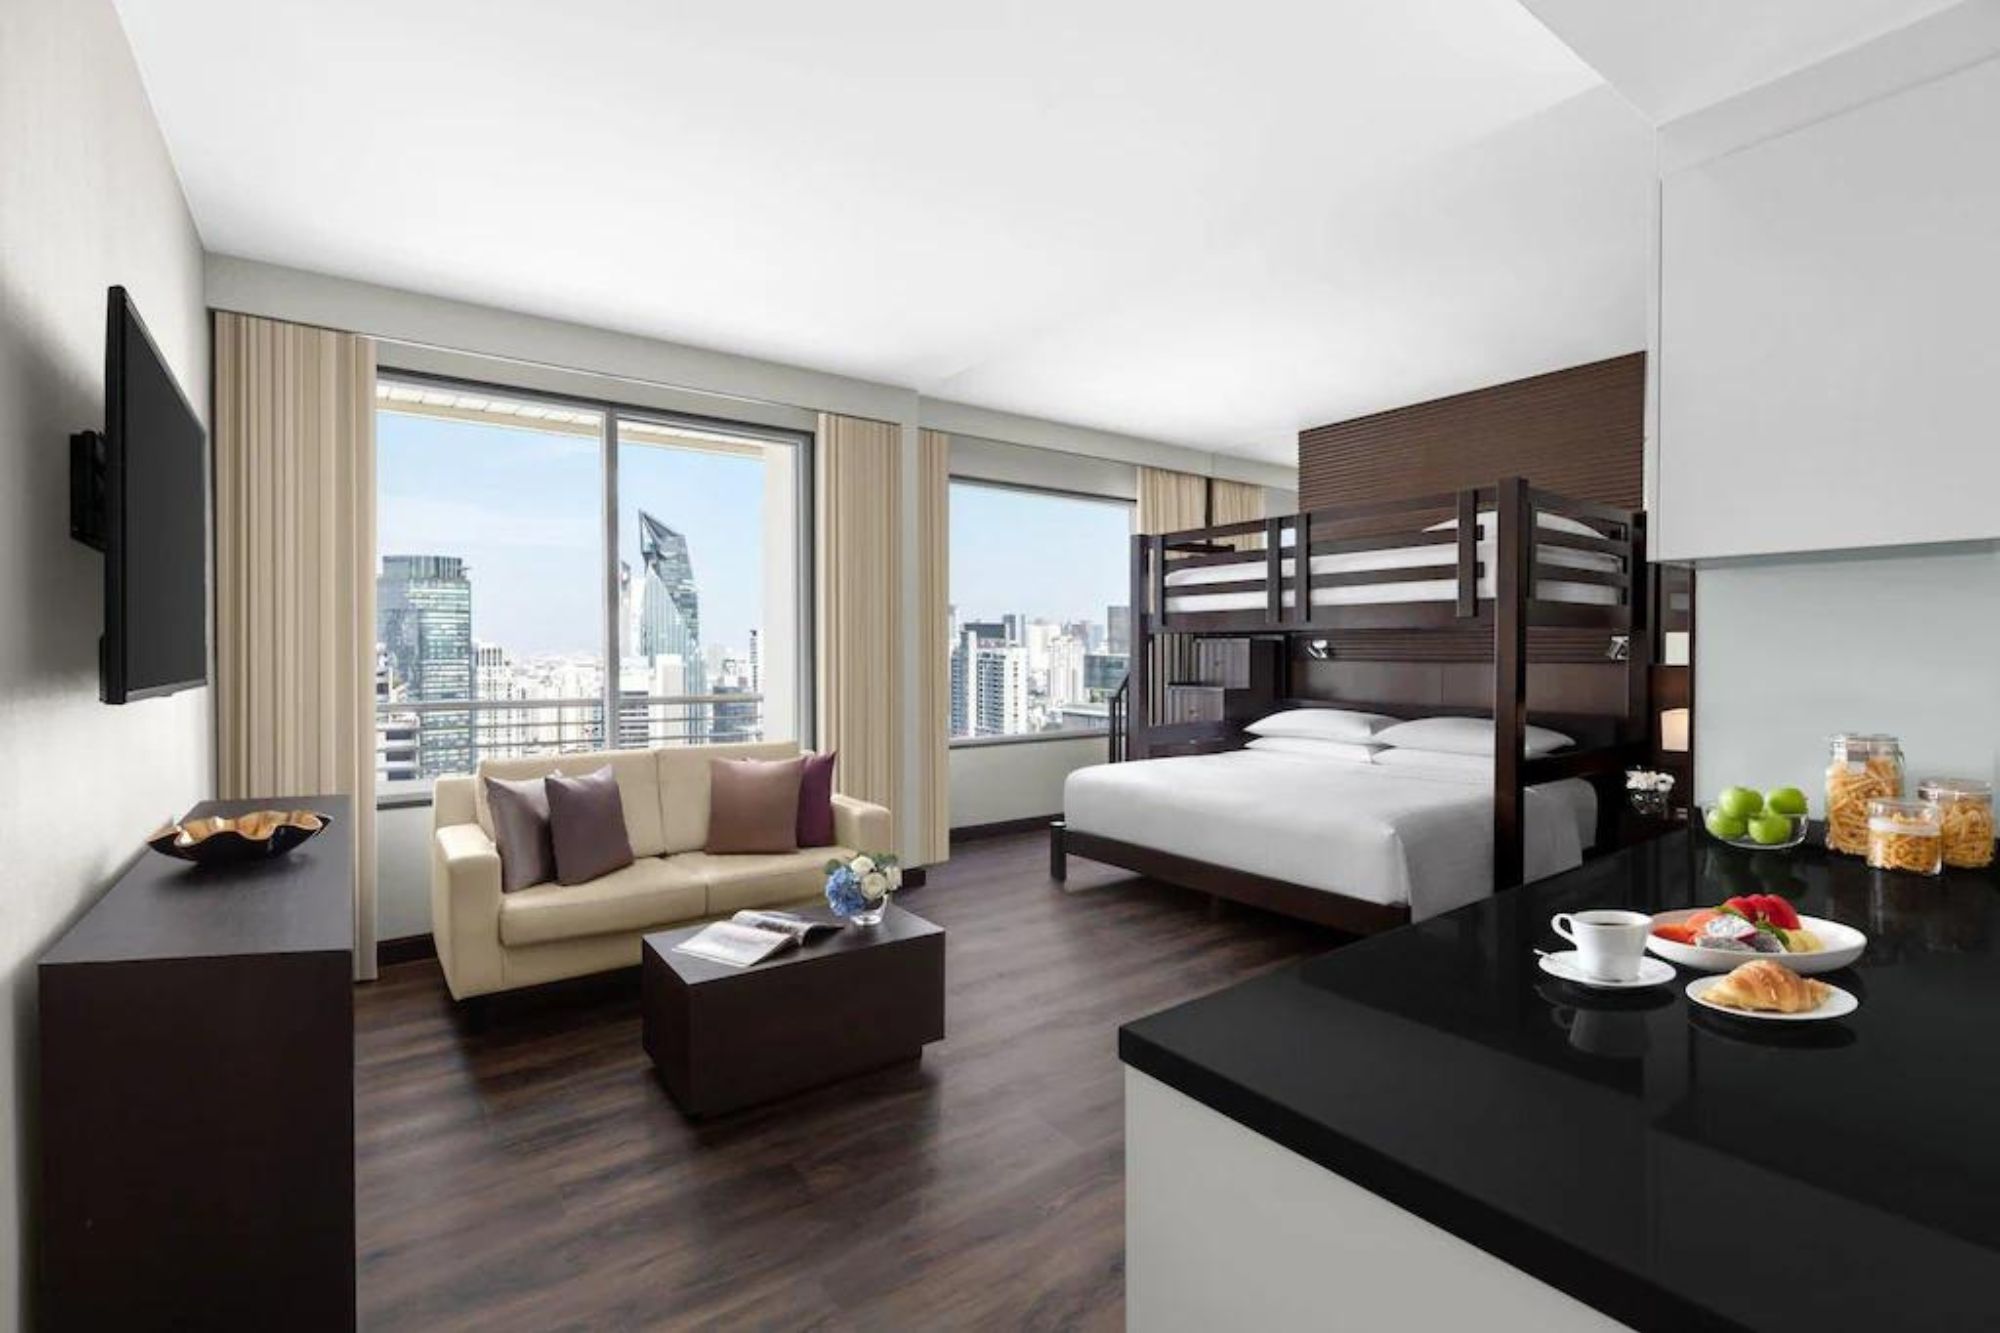 曼谷素坤逸公園萬豪行政公寓有雙層床房型，很適合家庭（圖片來源：飯店 FB）